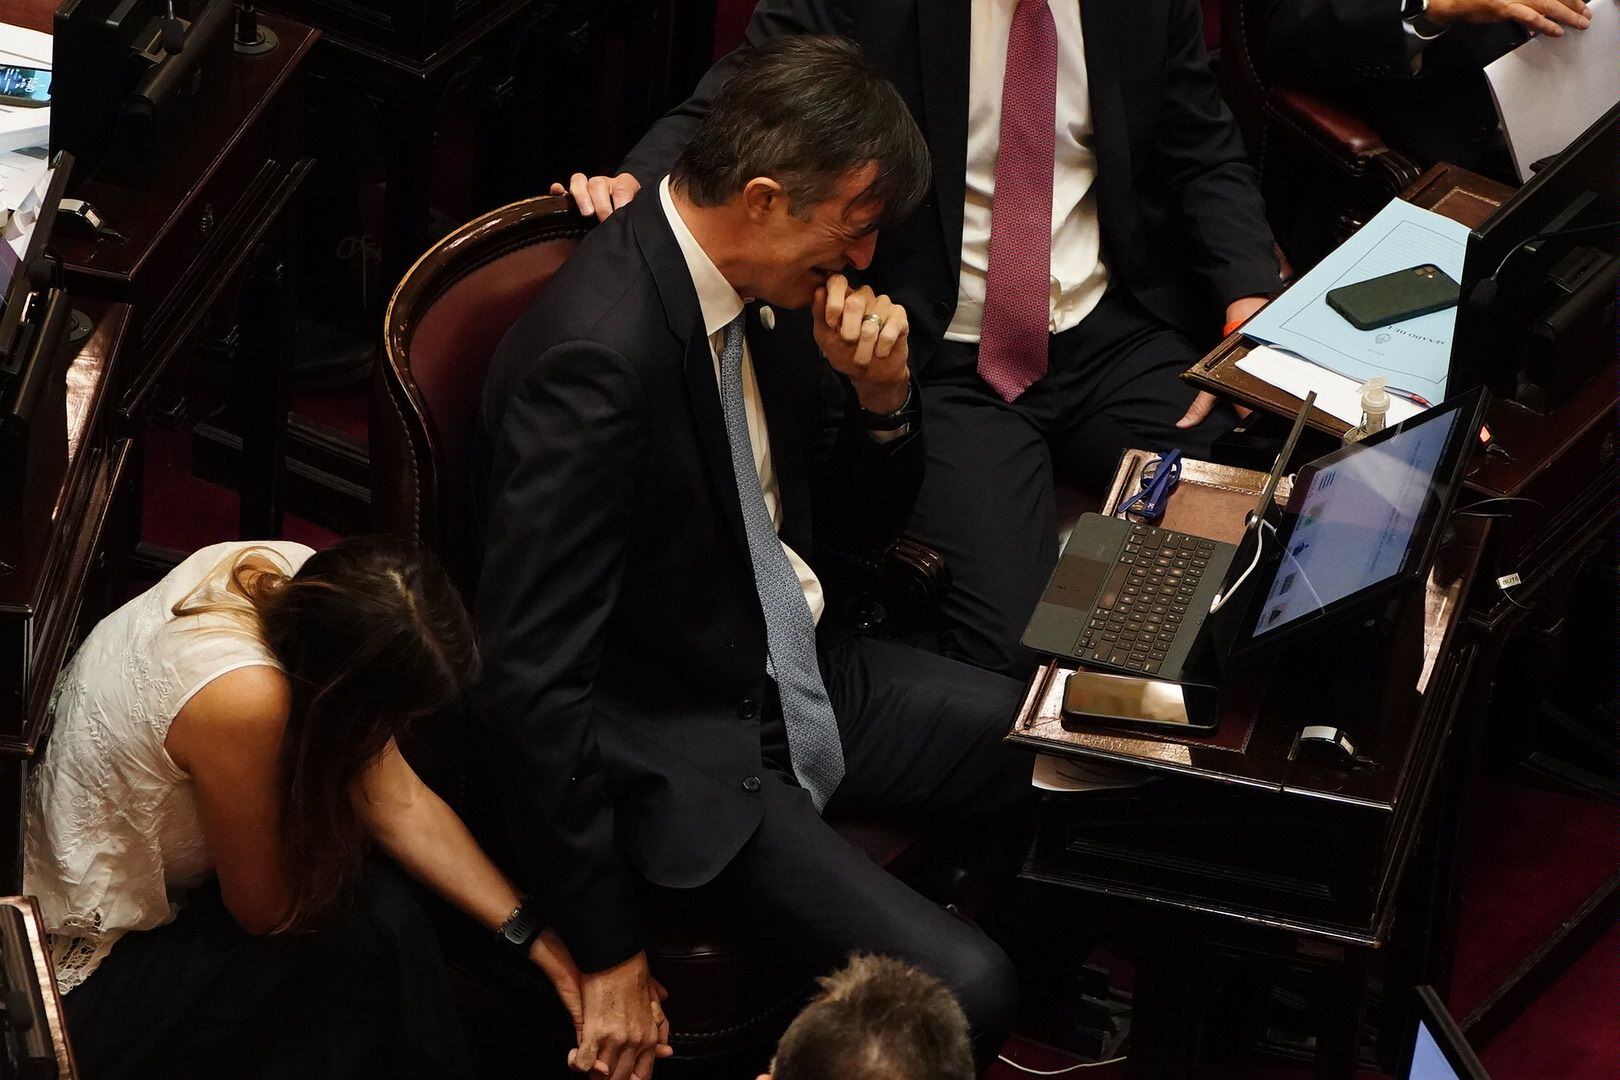 Renuncia senador Esteban Bullrich - Cristina Kirchner 09/12/21